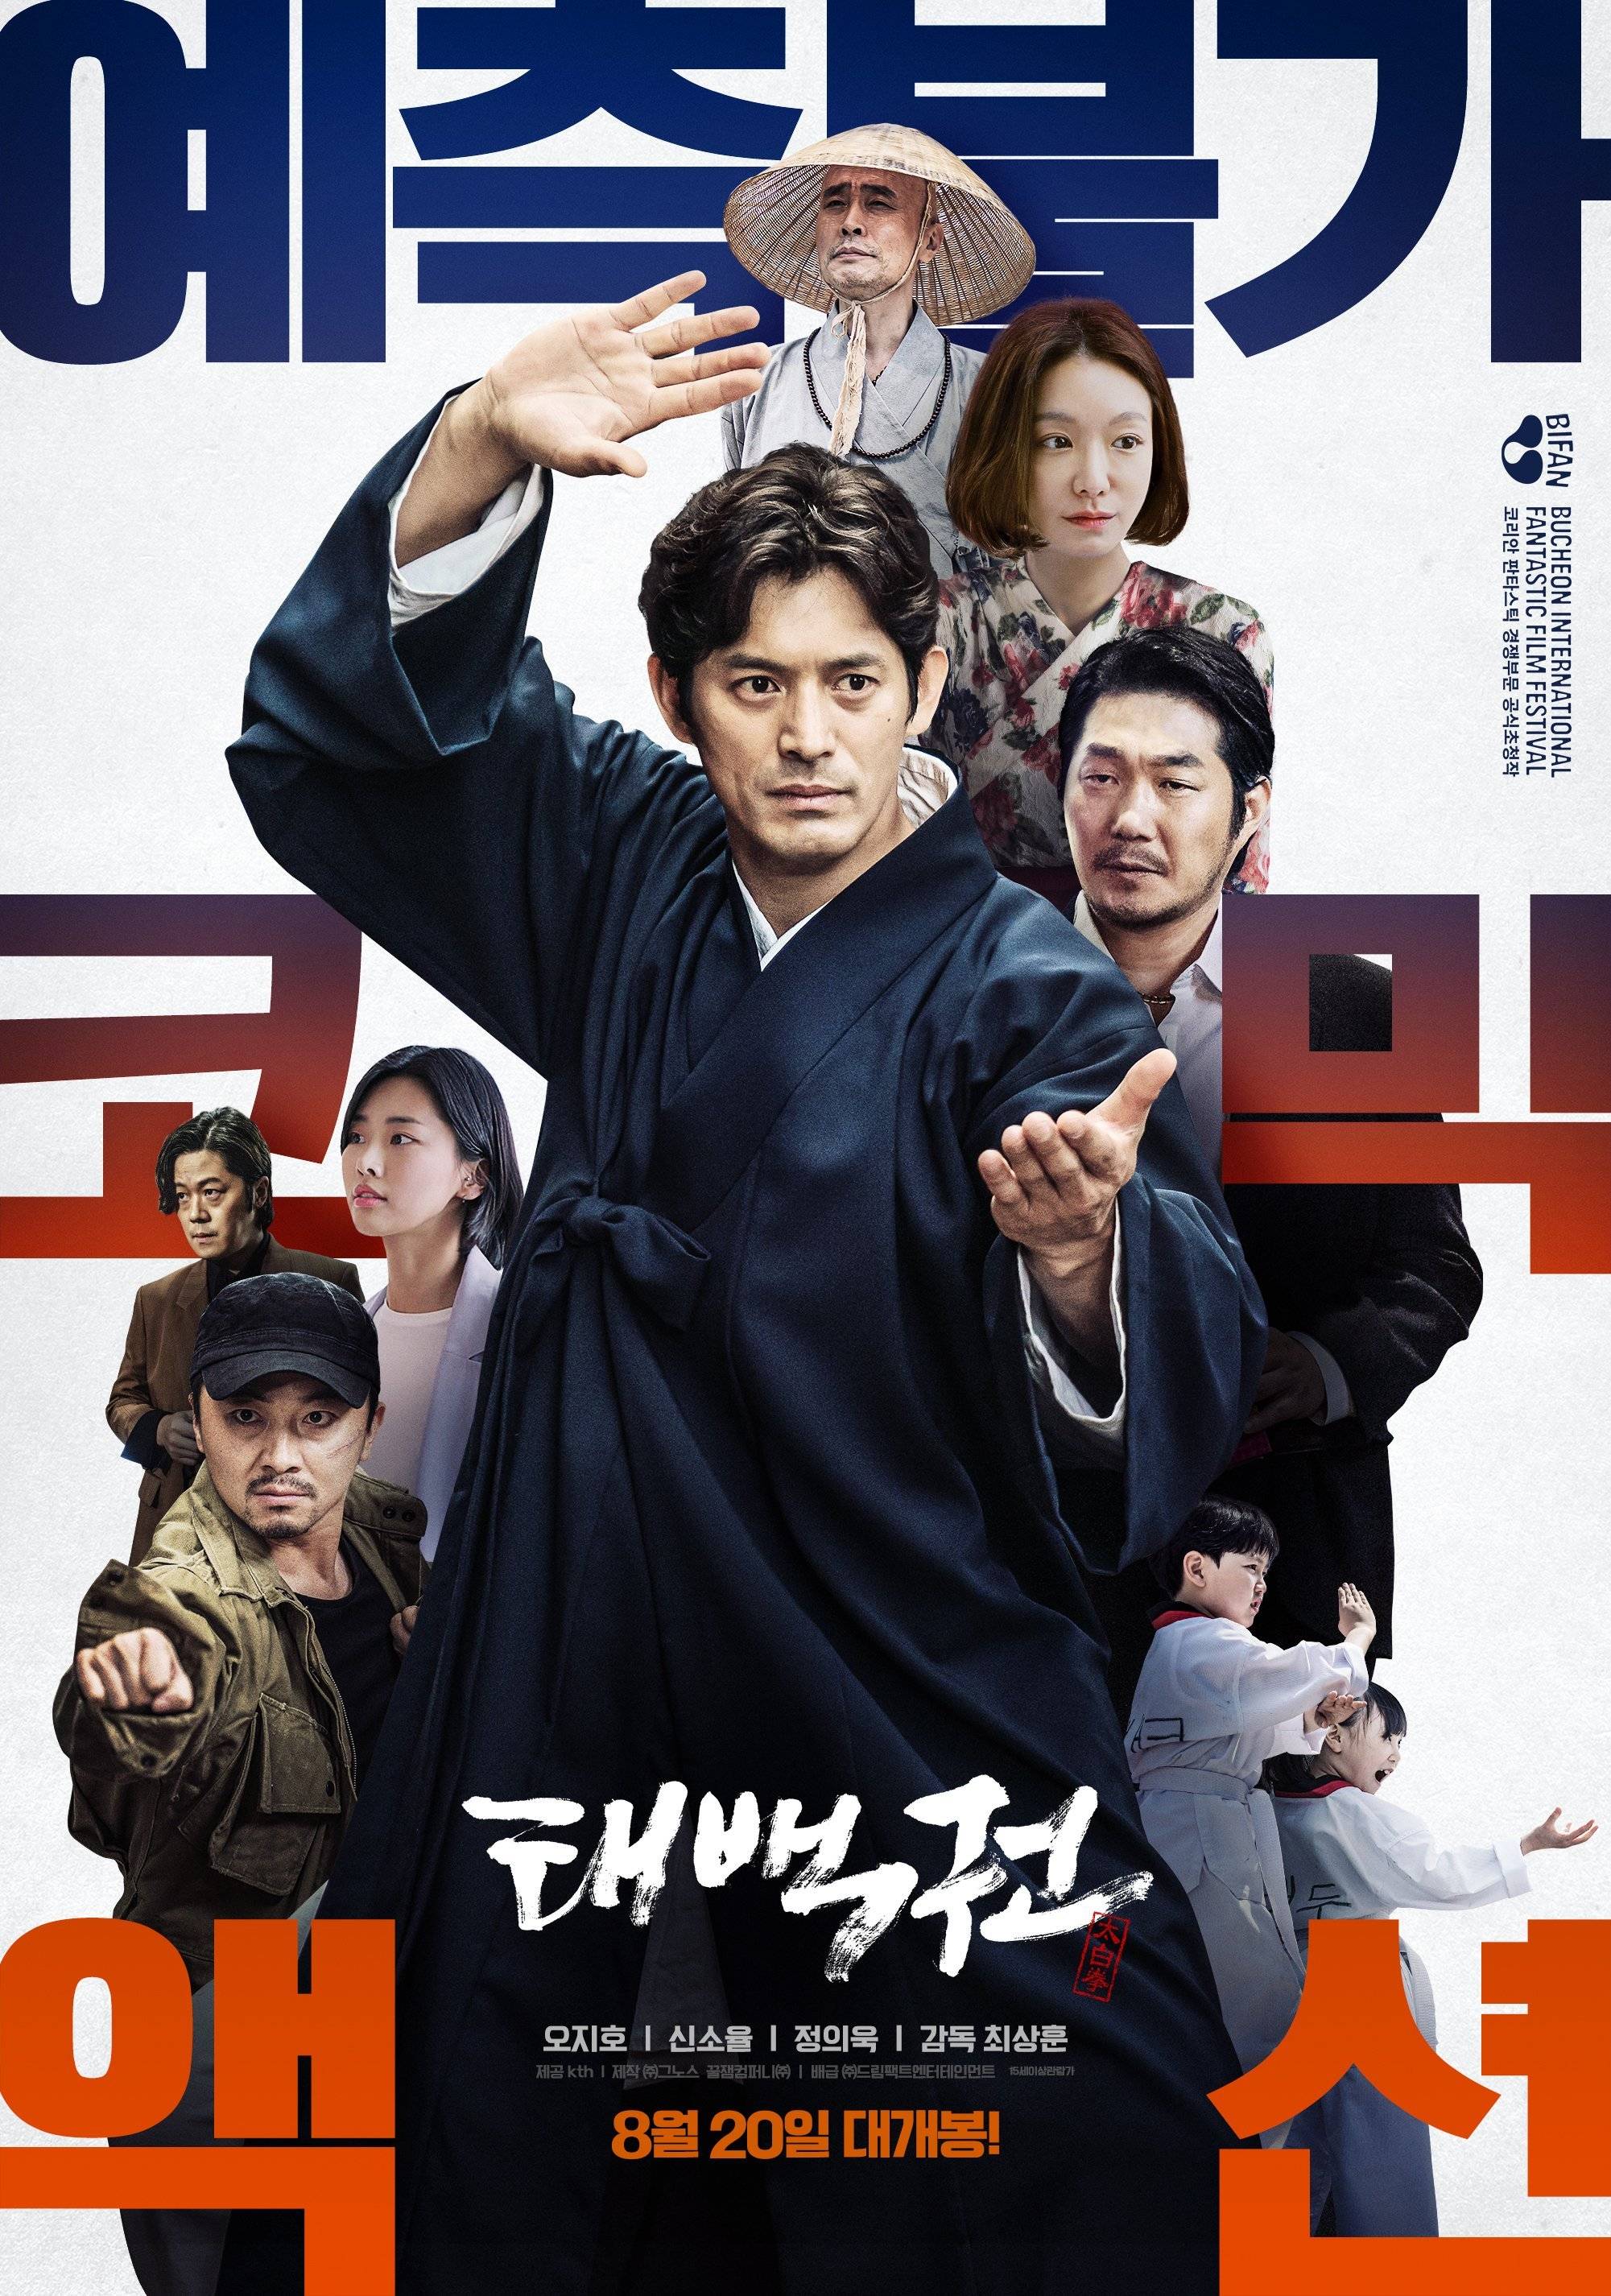 Korea Movie Imdb 100 Movies Daily